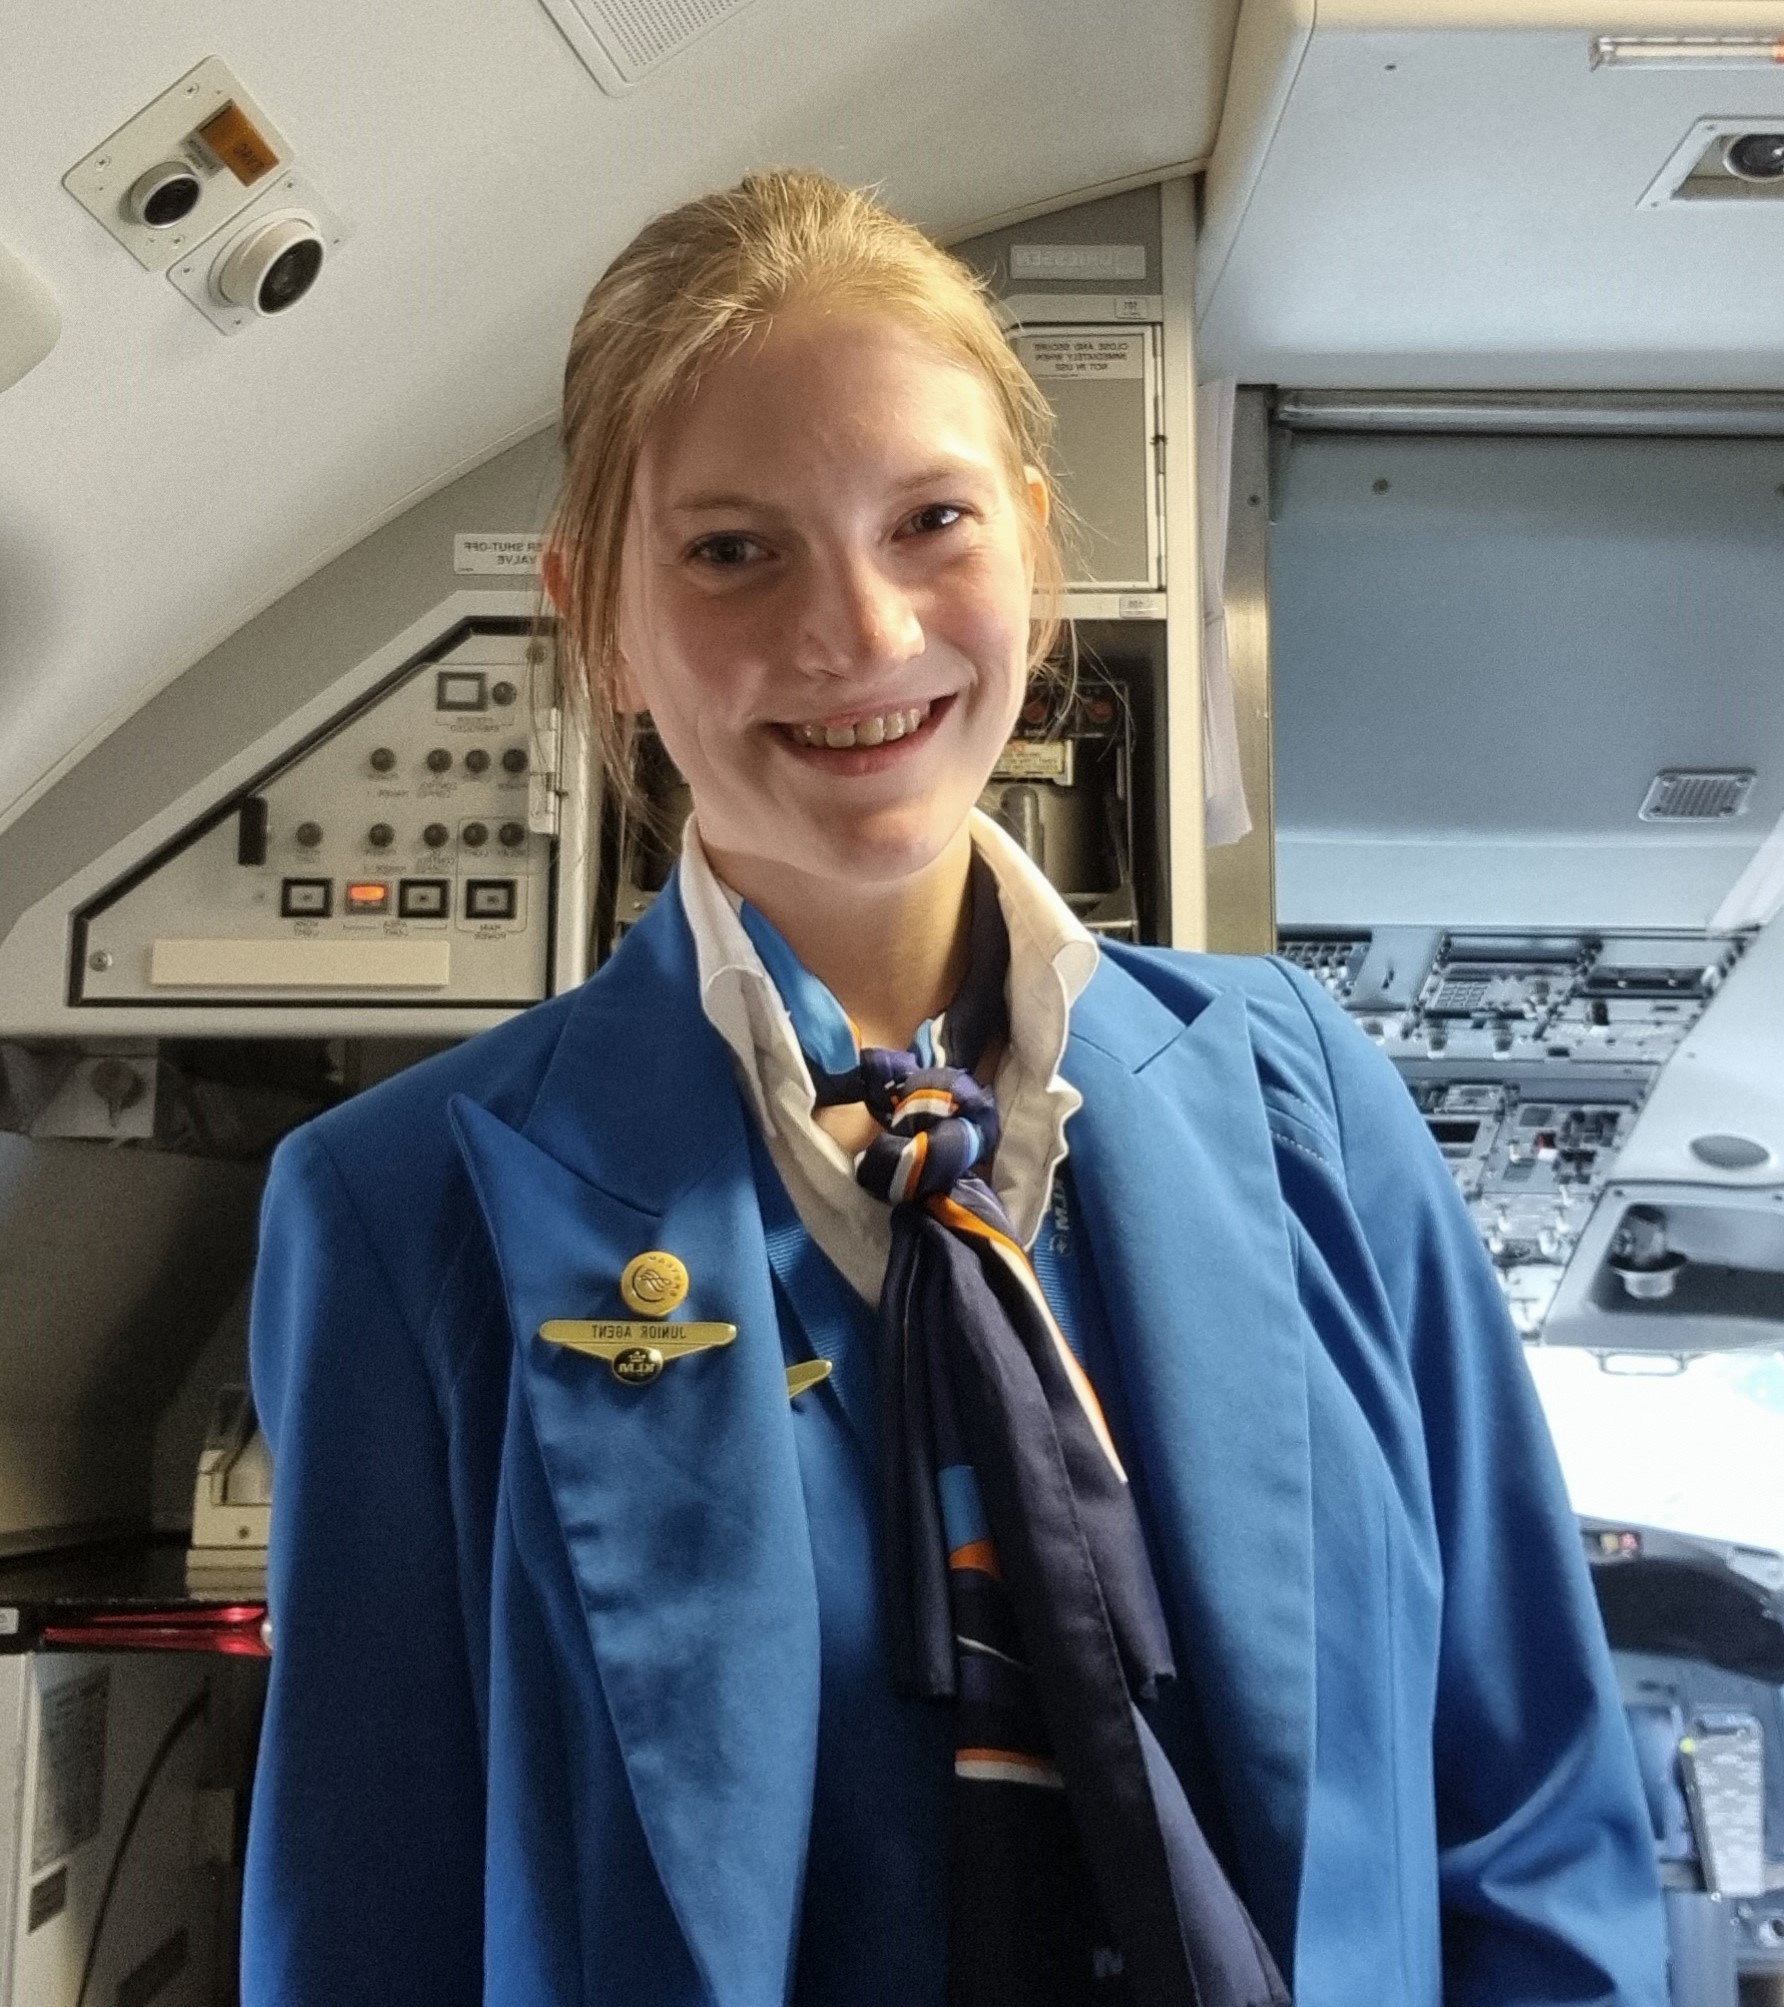 piano Profeet veer Gastblog Shayenna - Van gepest meisje tot trotste KLM-stewardess - Wij  hebben een schisis